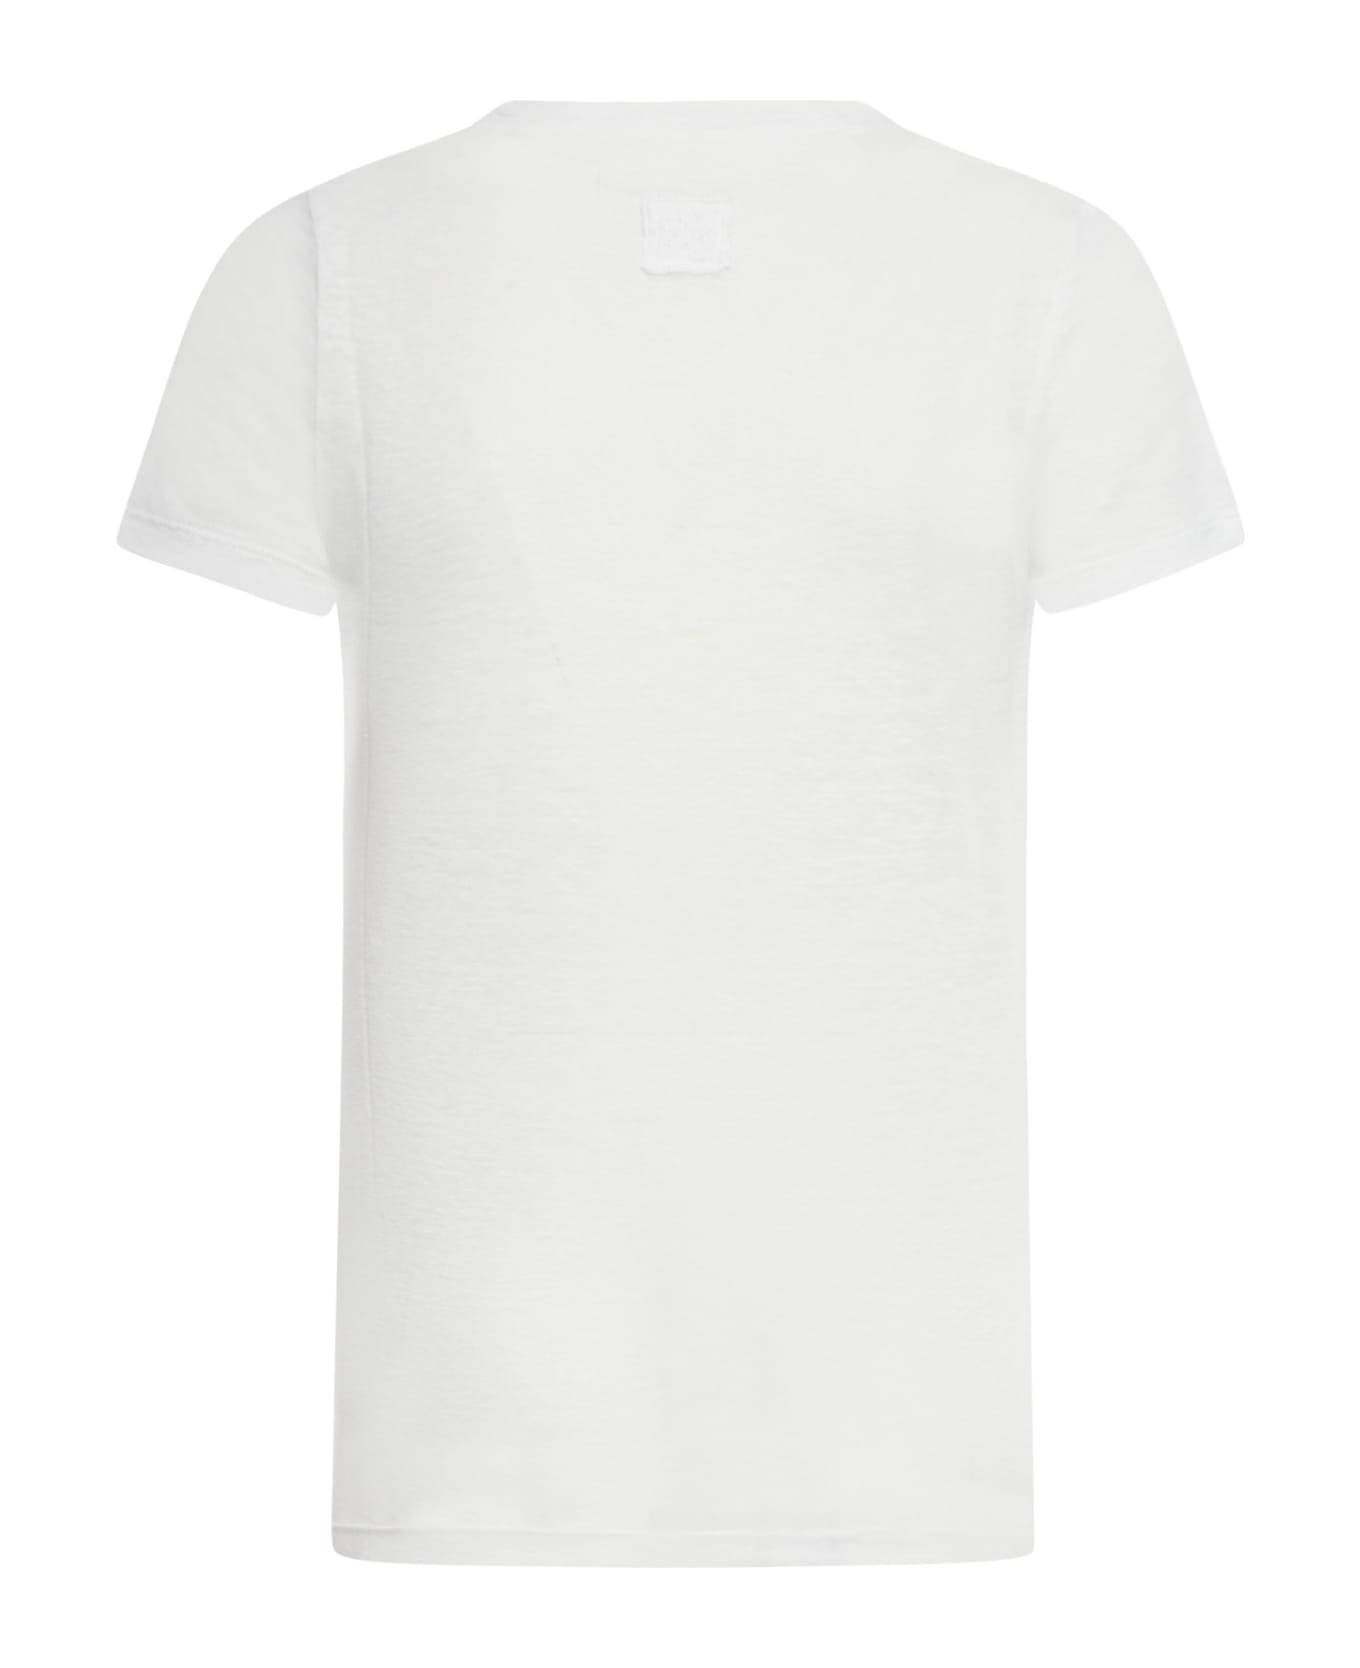 120% Lino Short Sleeve Women Tshirt - R White Solid Tシャツ